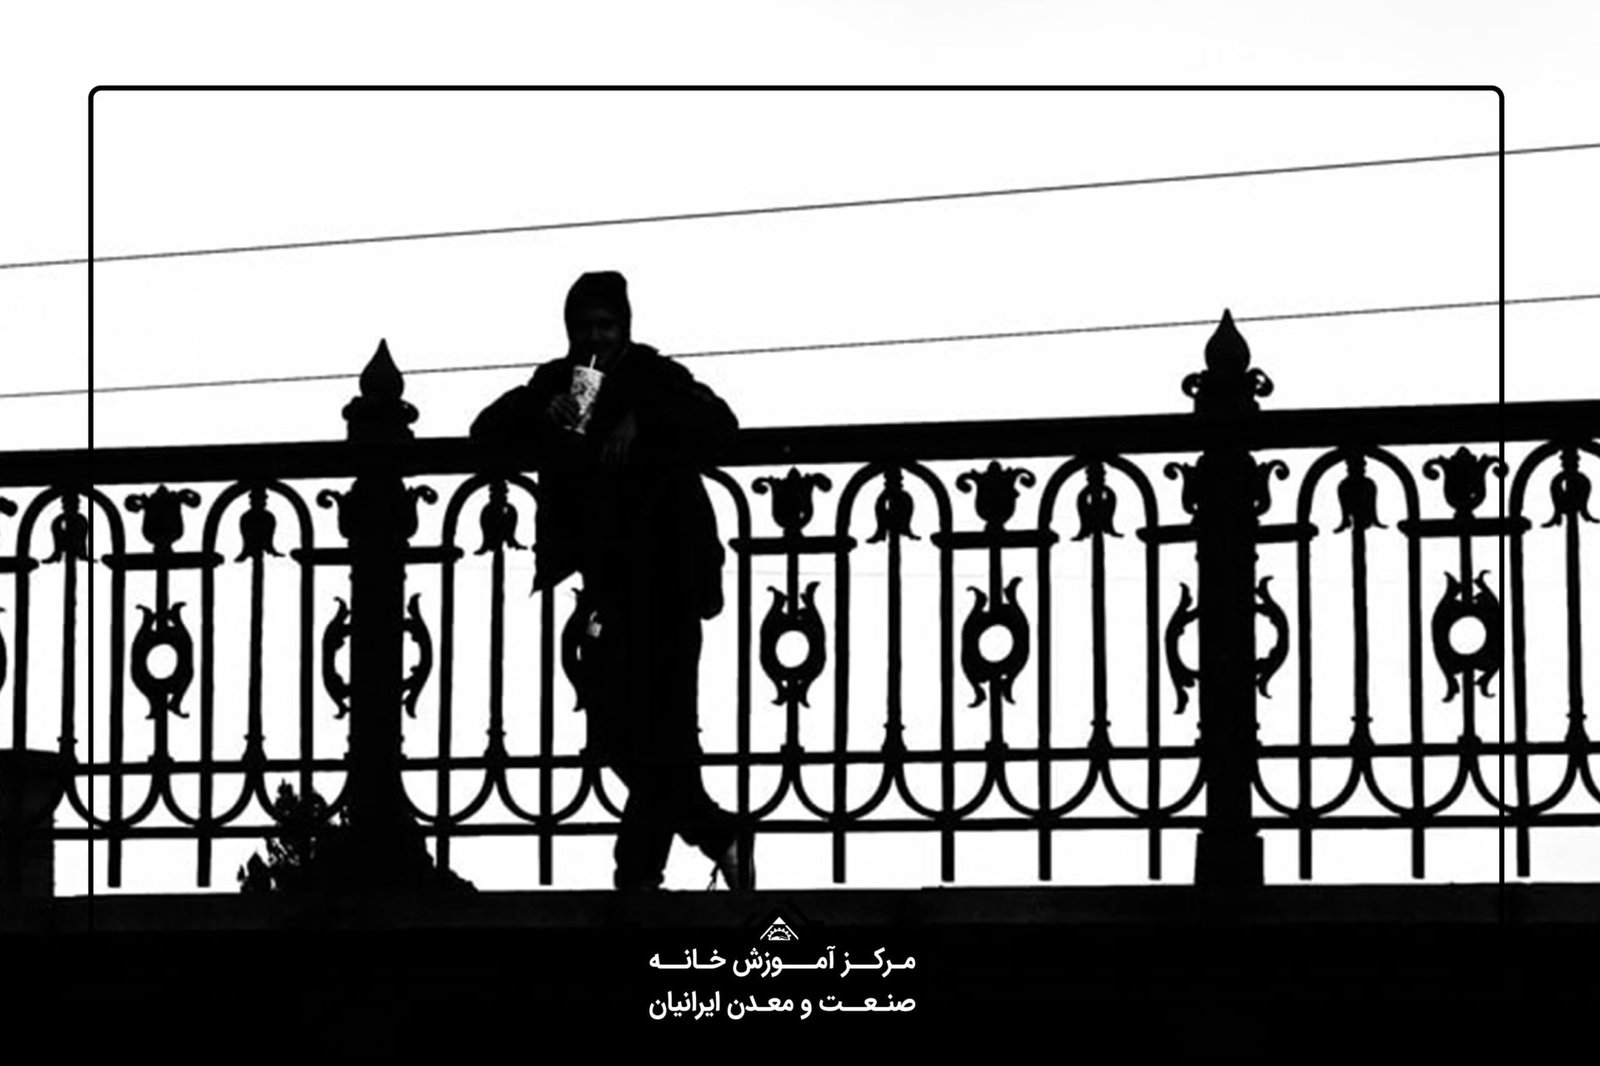 آموزش عکاسی حرفه ای در شیراز